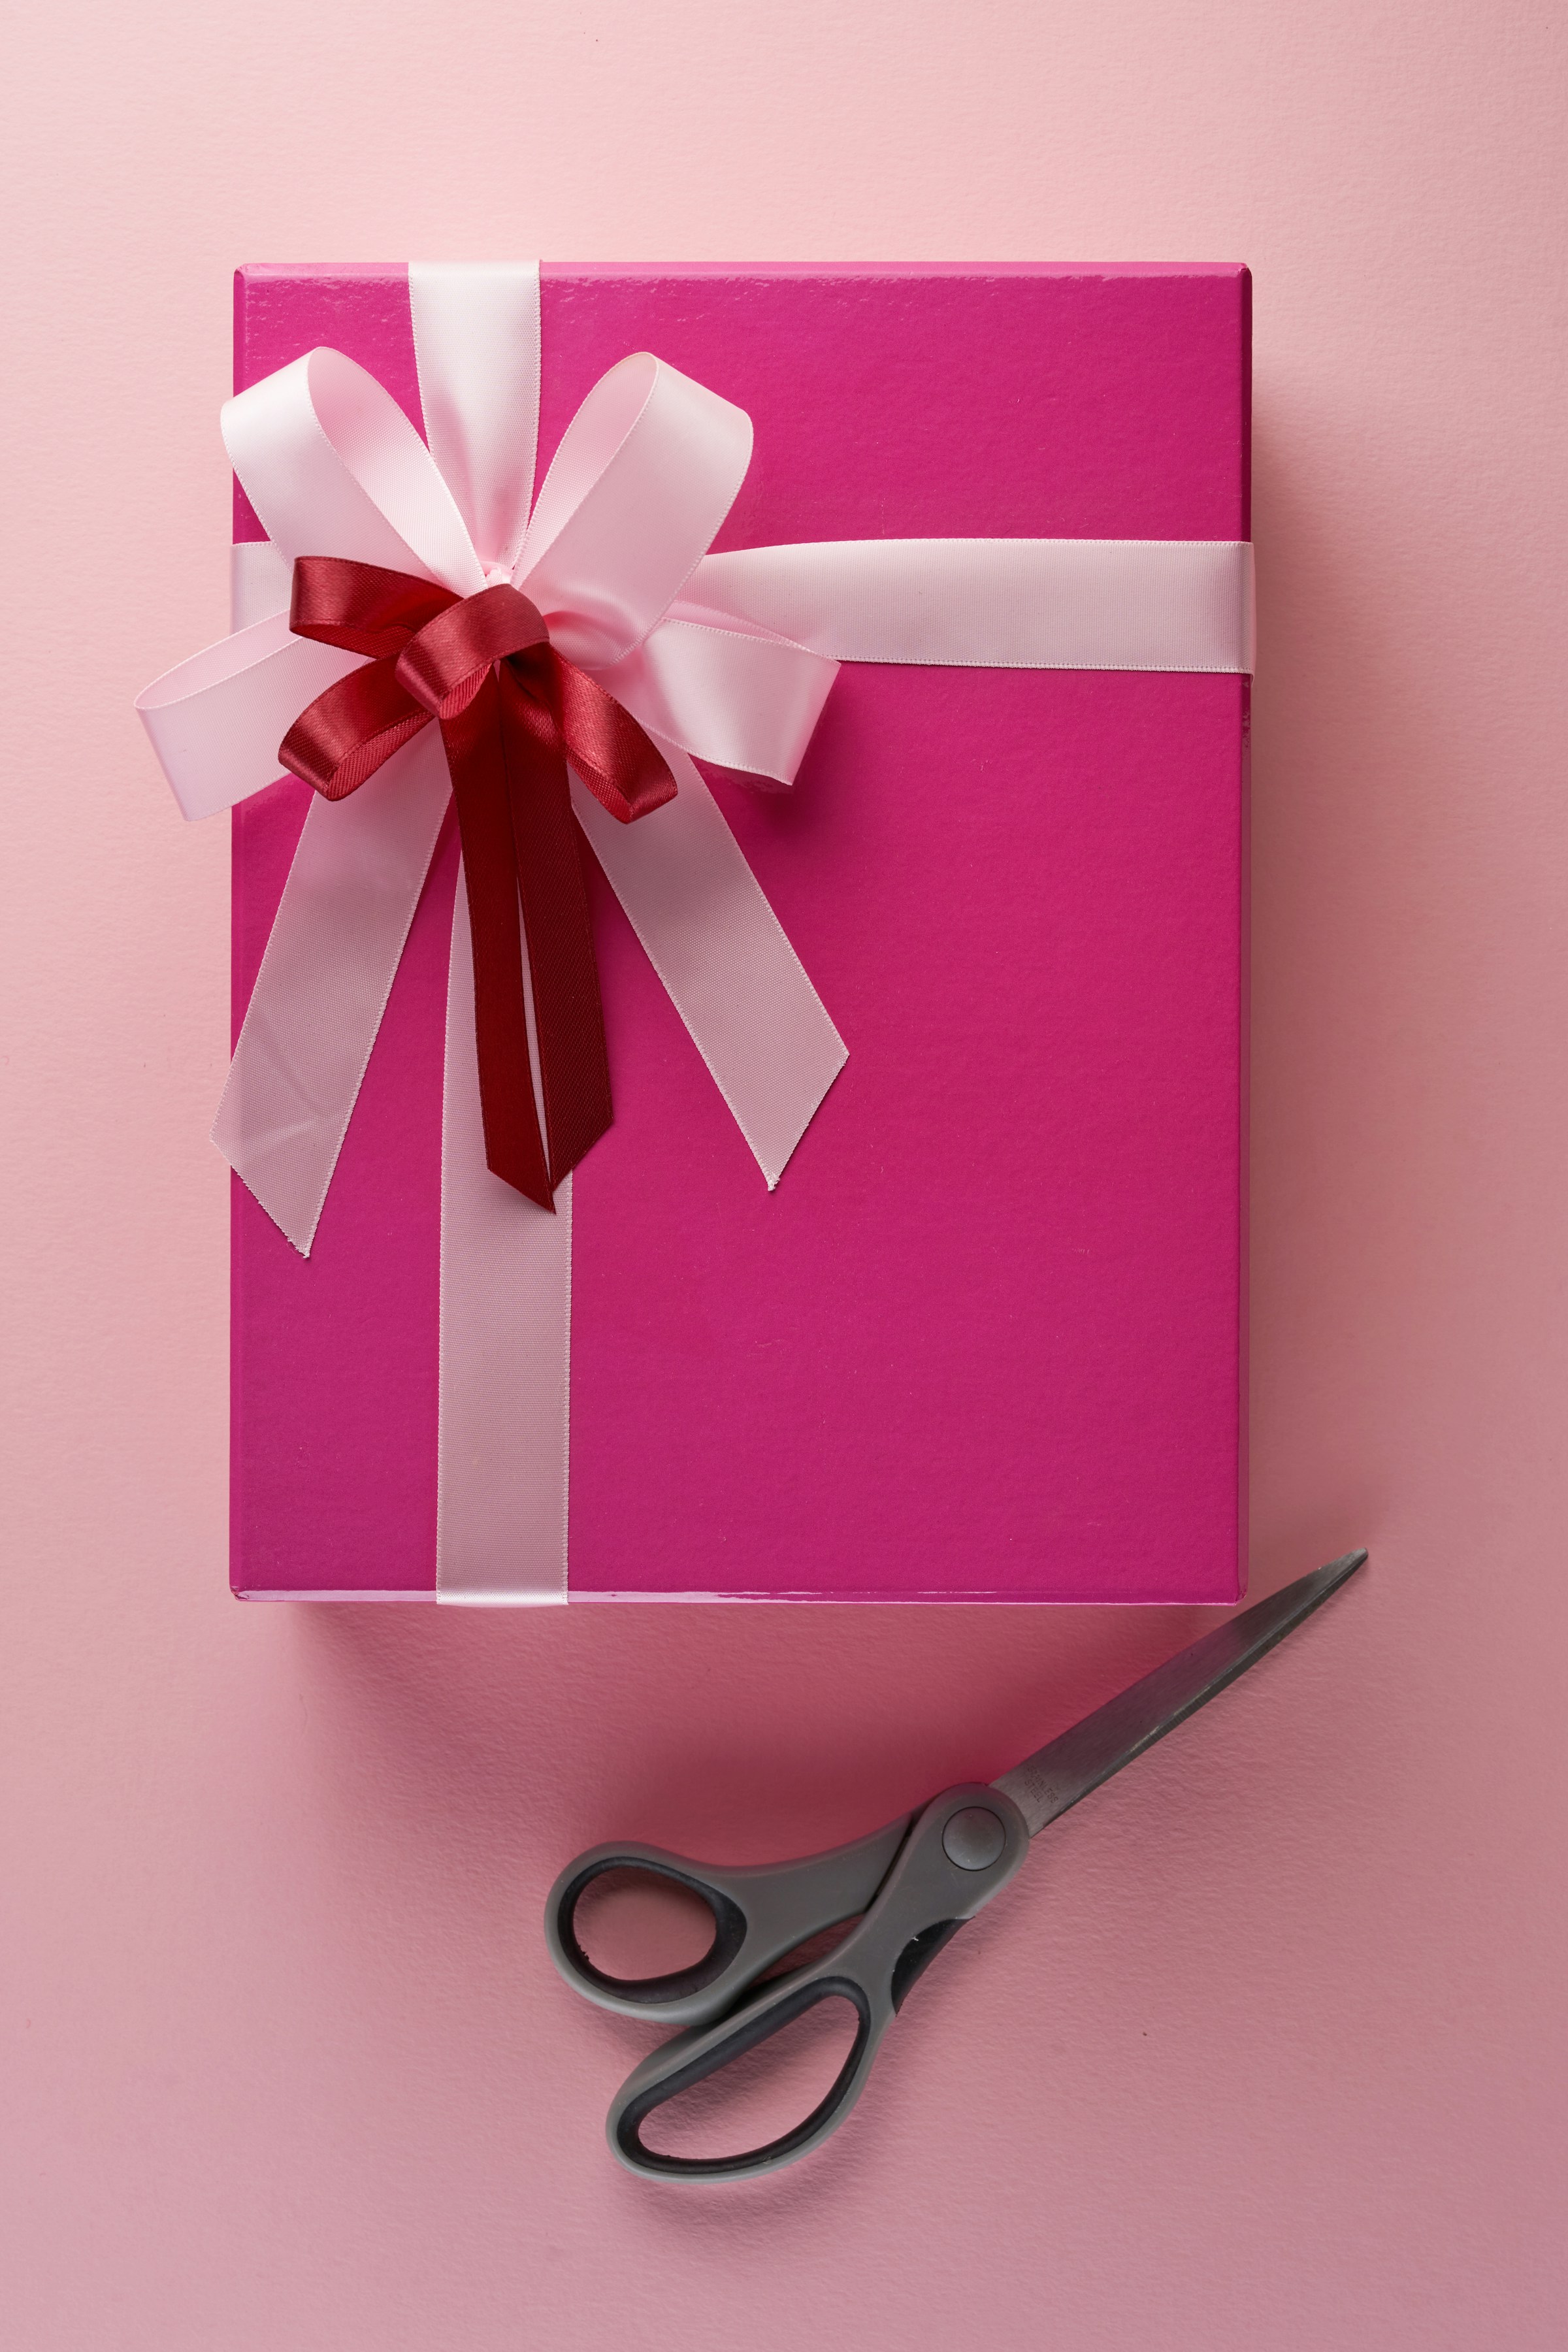 Un paquet cadeau rose | Source : Unsplash